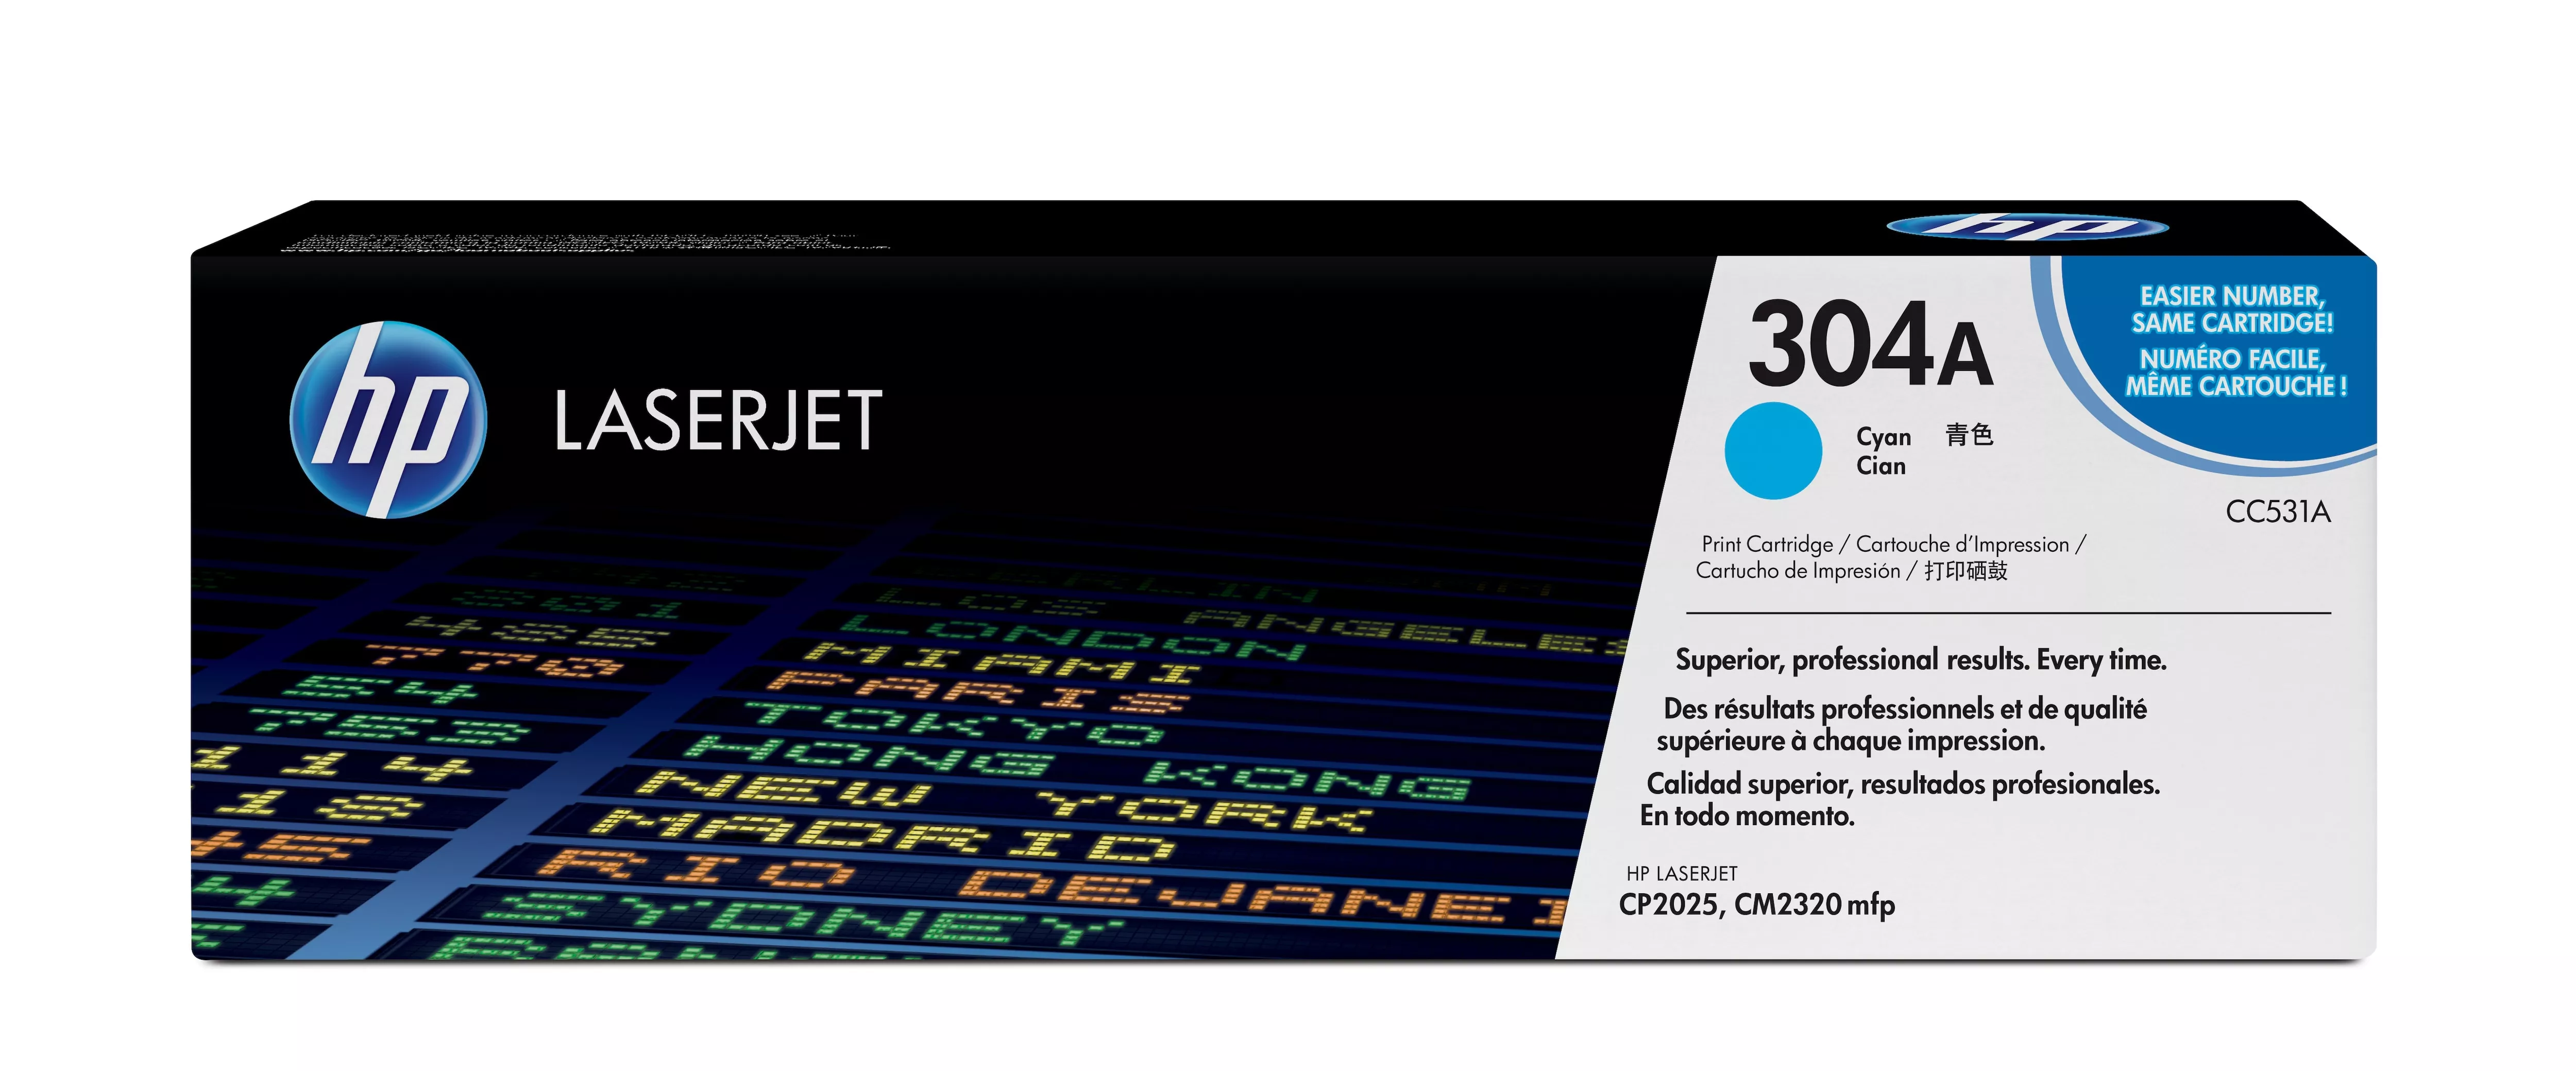 Achat HP 304A original Colour LaserJet Toner cartridge CC531A au meilleur prix